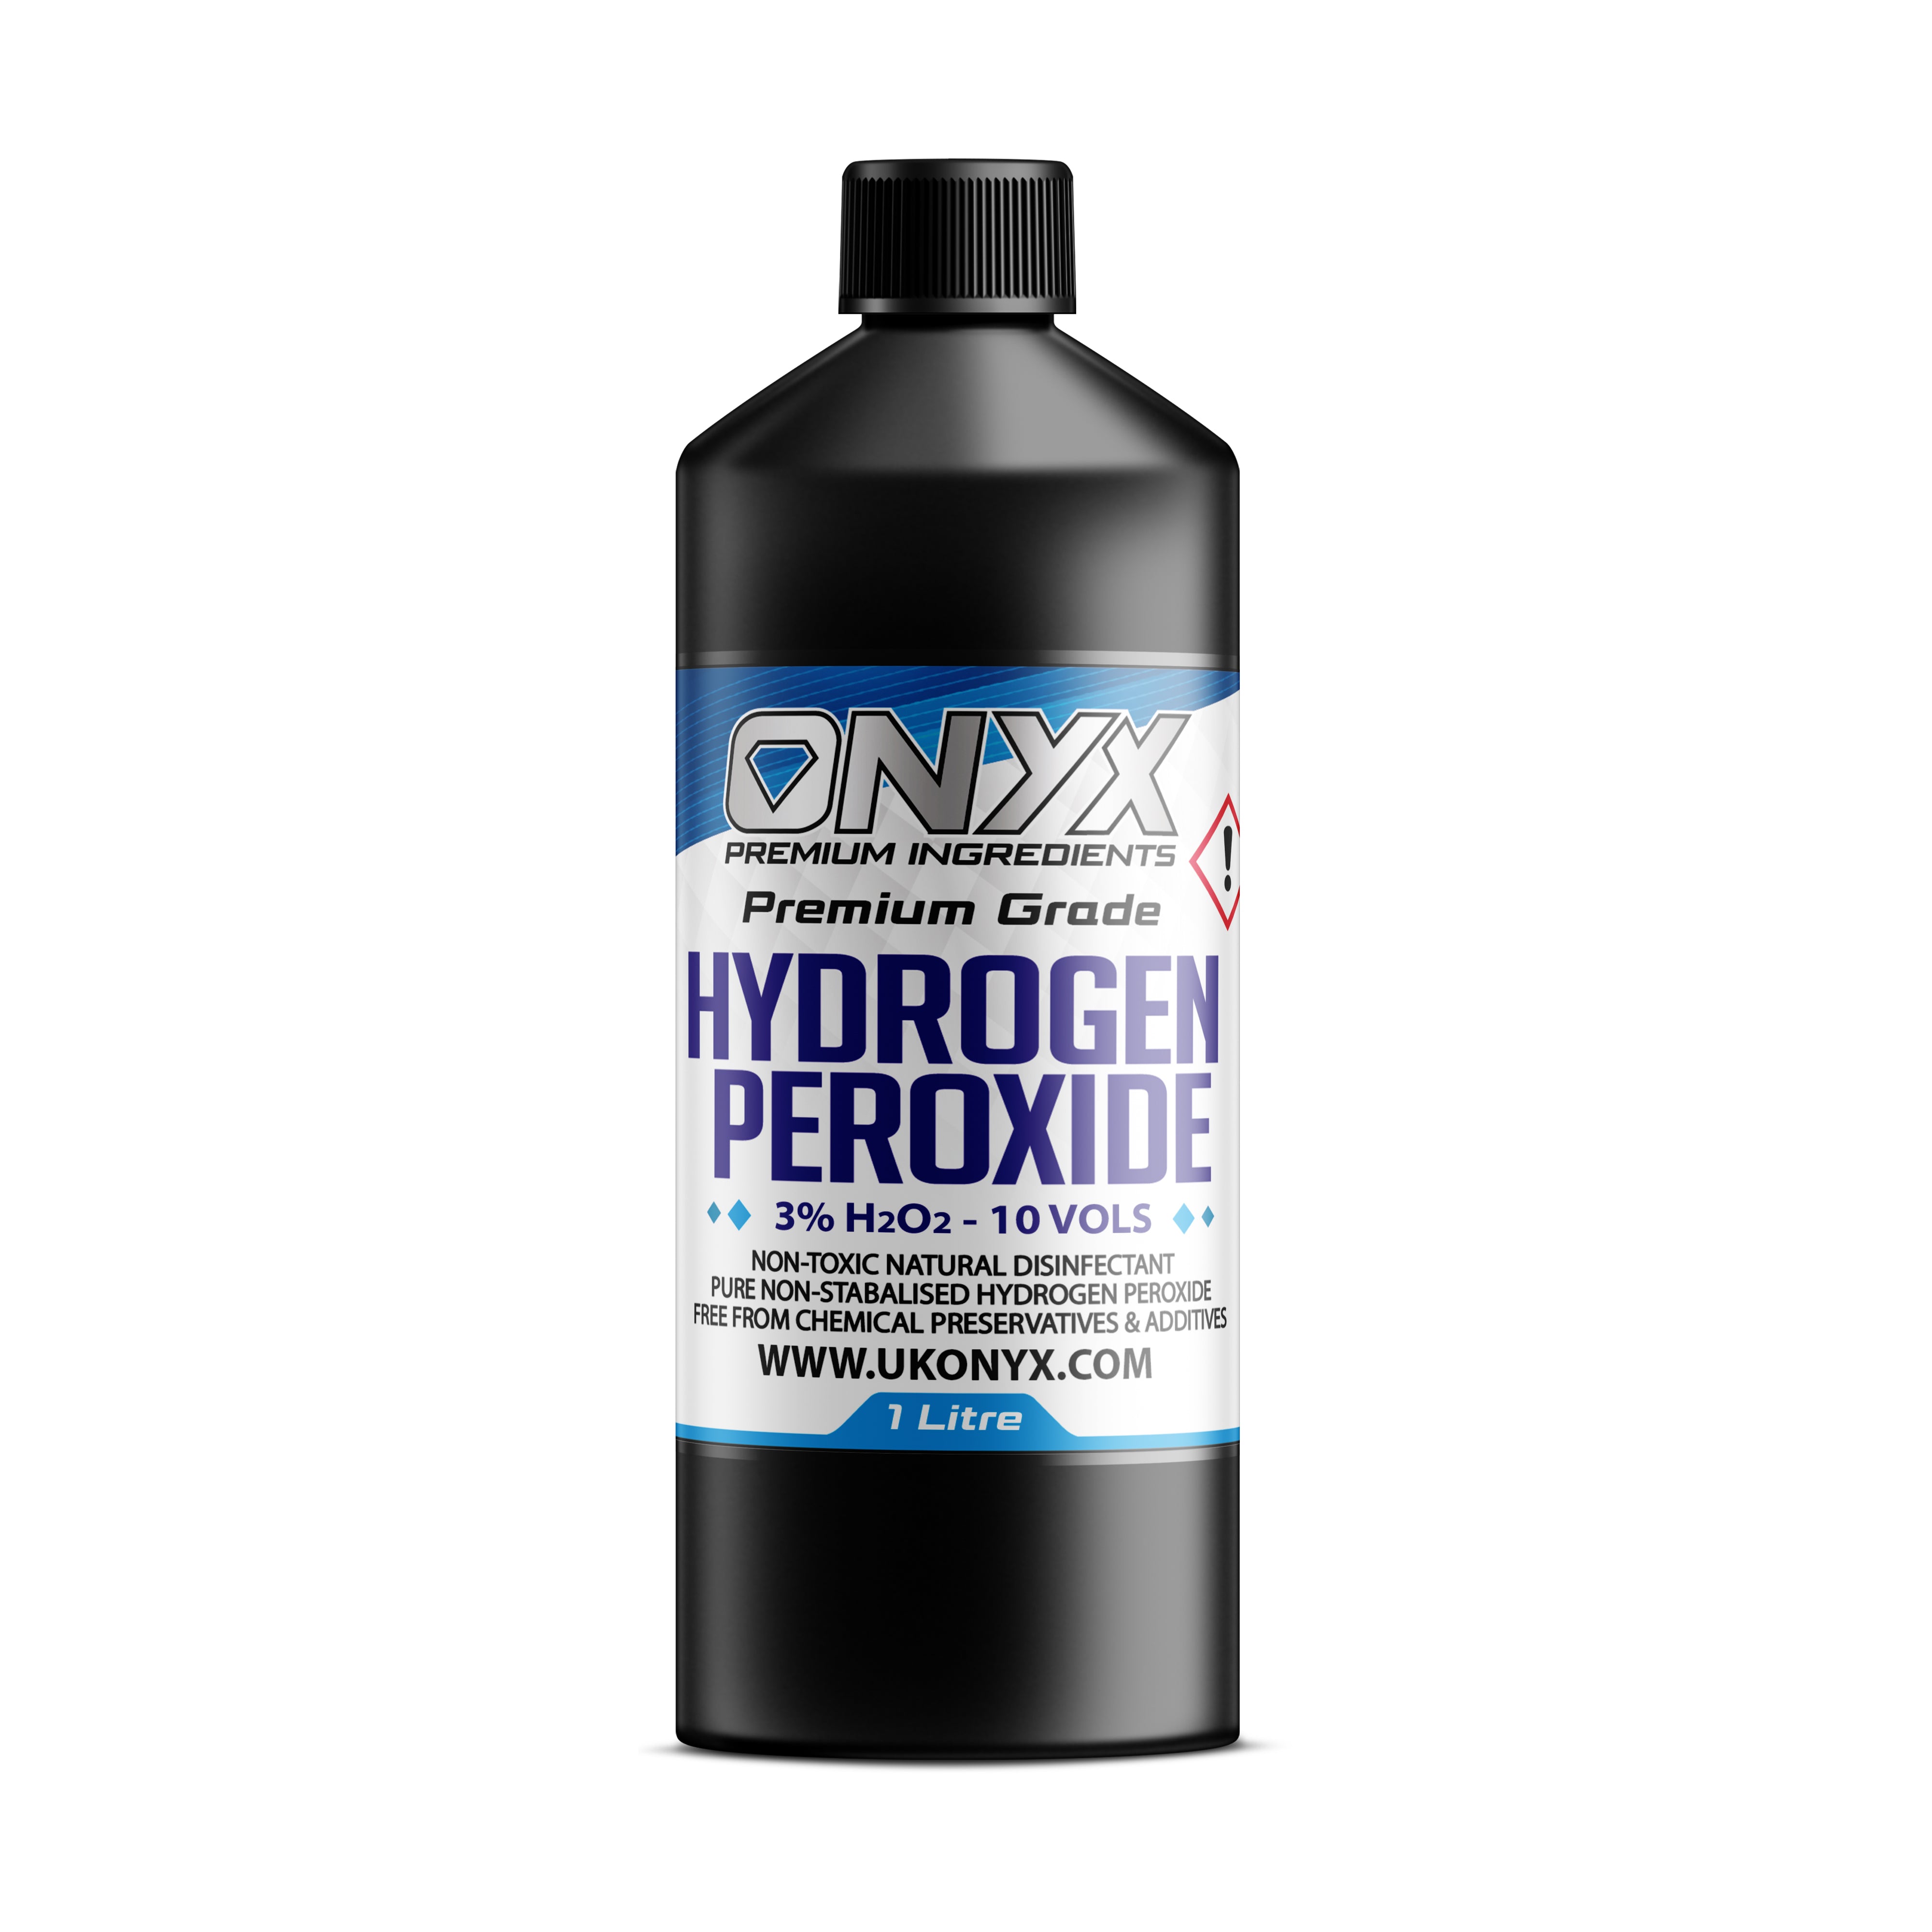 Peroxyde d'hydrogène pur de qualité alimentaire 3 %, 10 vol. Nettoyant désinfectant naturel non toxique